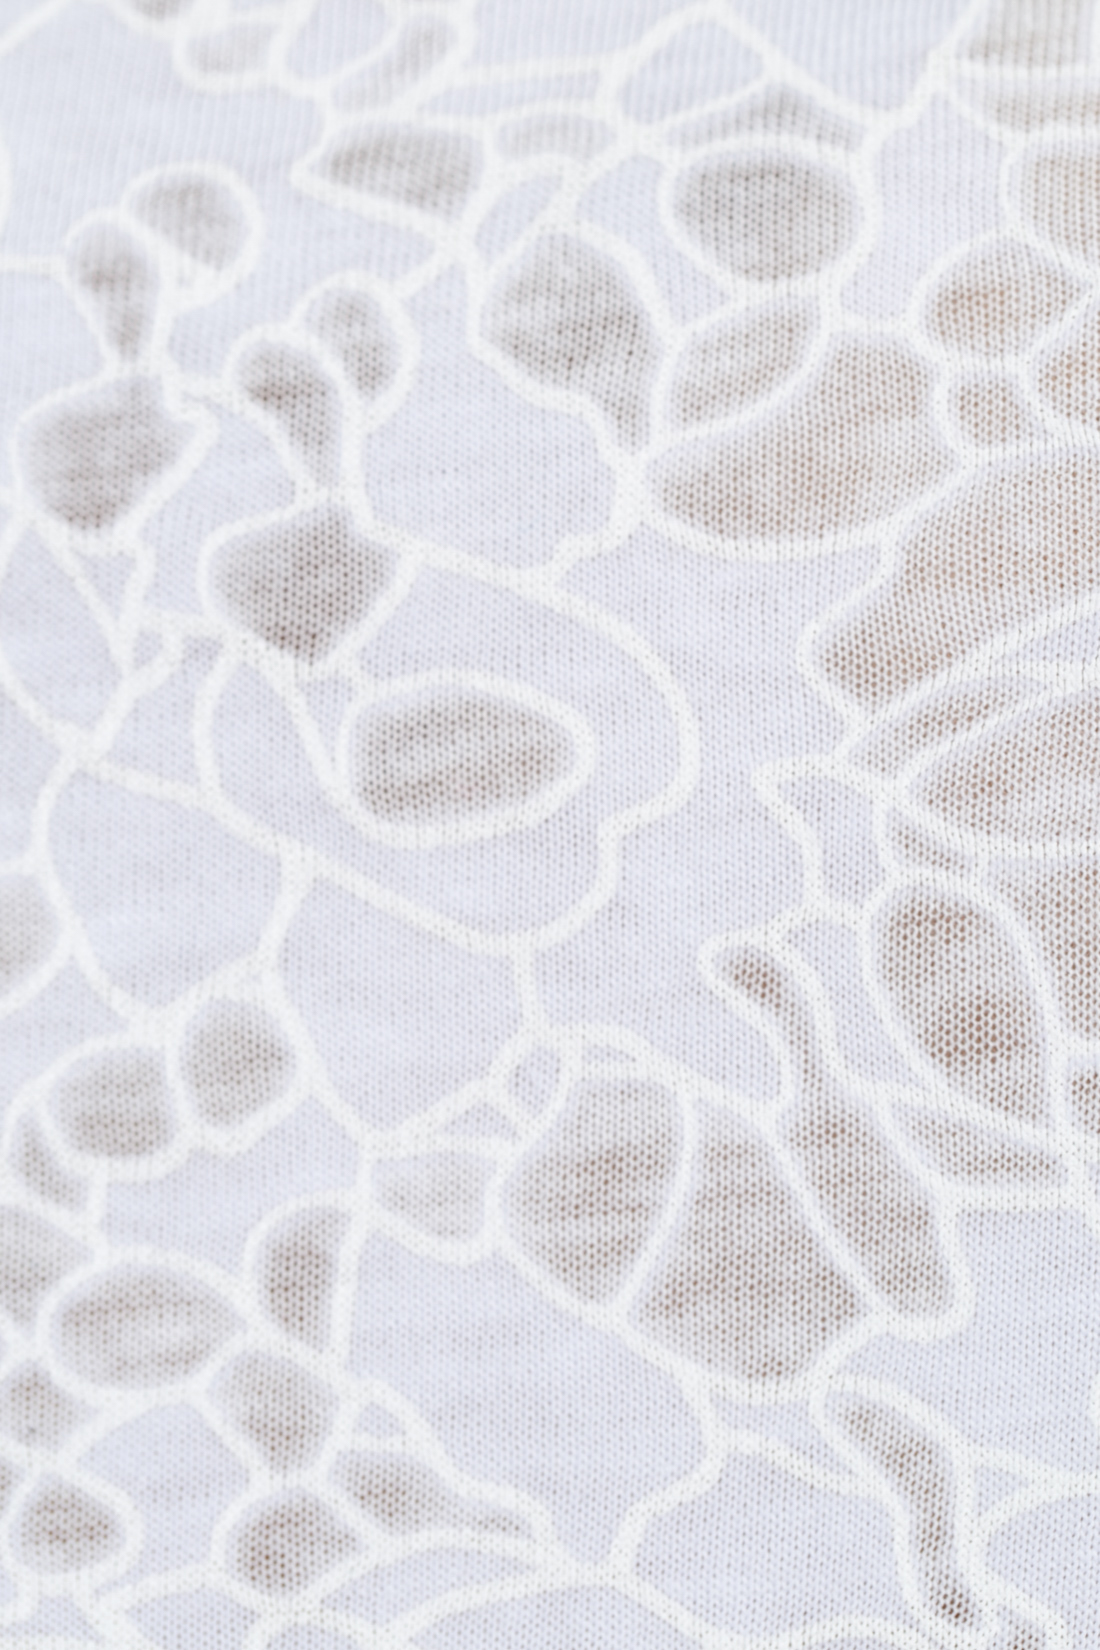 Майка из трикотажа с травлением (арт. baon B257001), размер XS, цвет белый Майка из трикотажа с травлением (арт. baon B257001) - фото 3